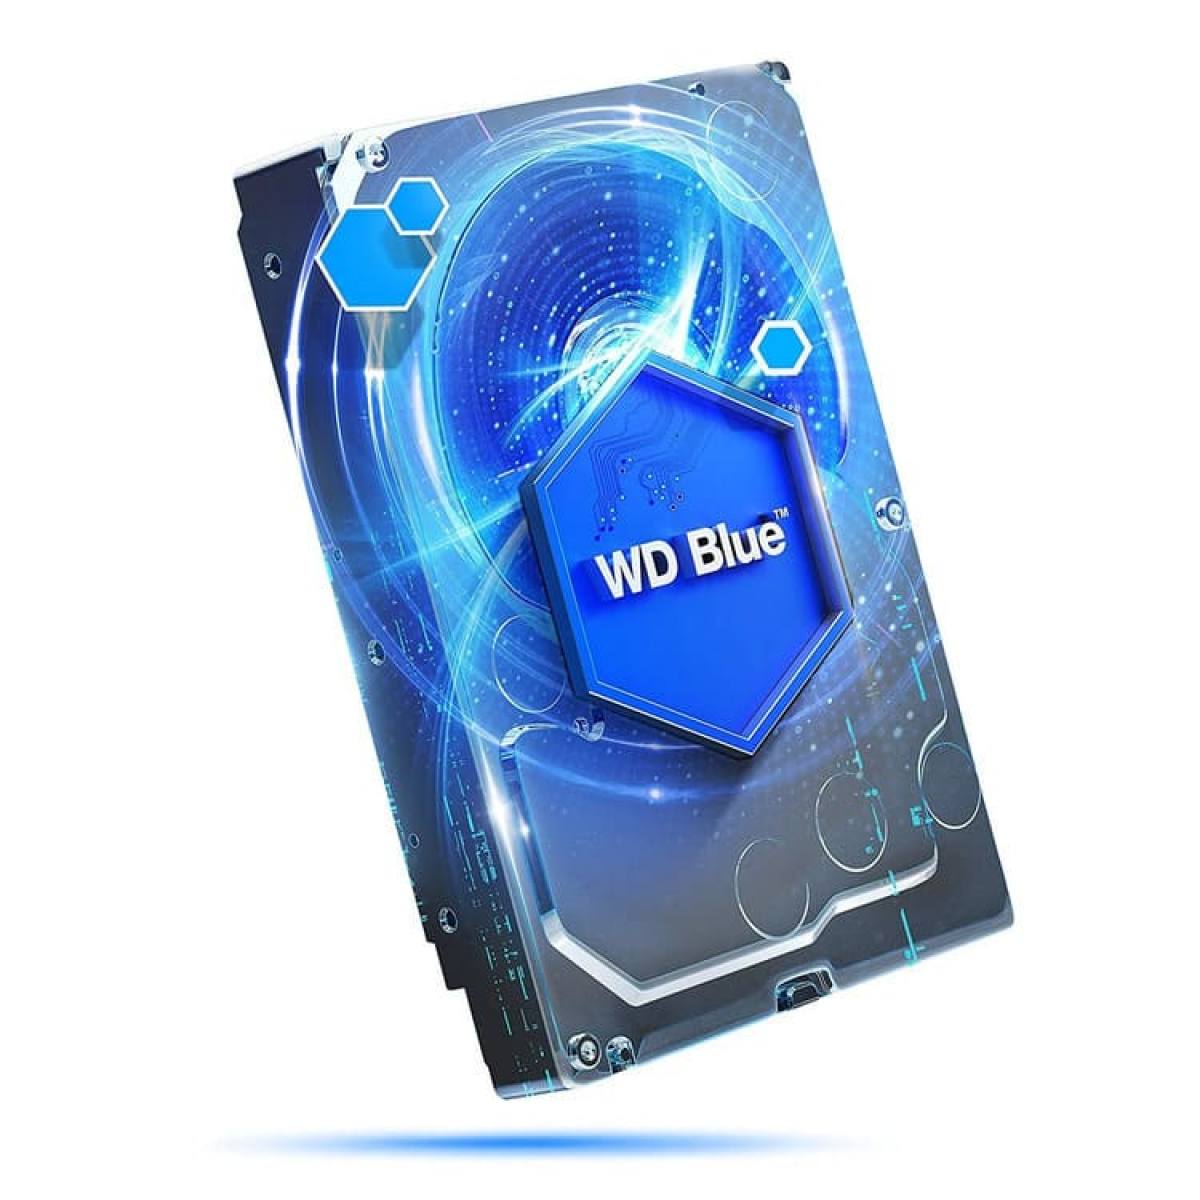 HDD WD Blue 1TB WD10EZEX | SATA III - 3.5" - 7200RPM